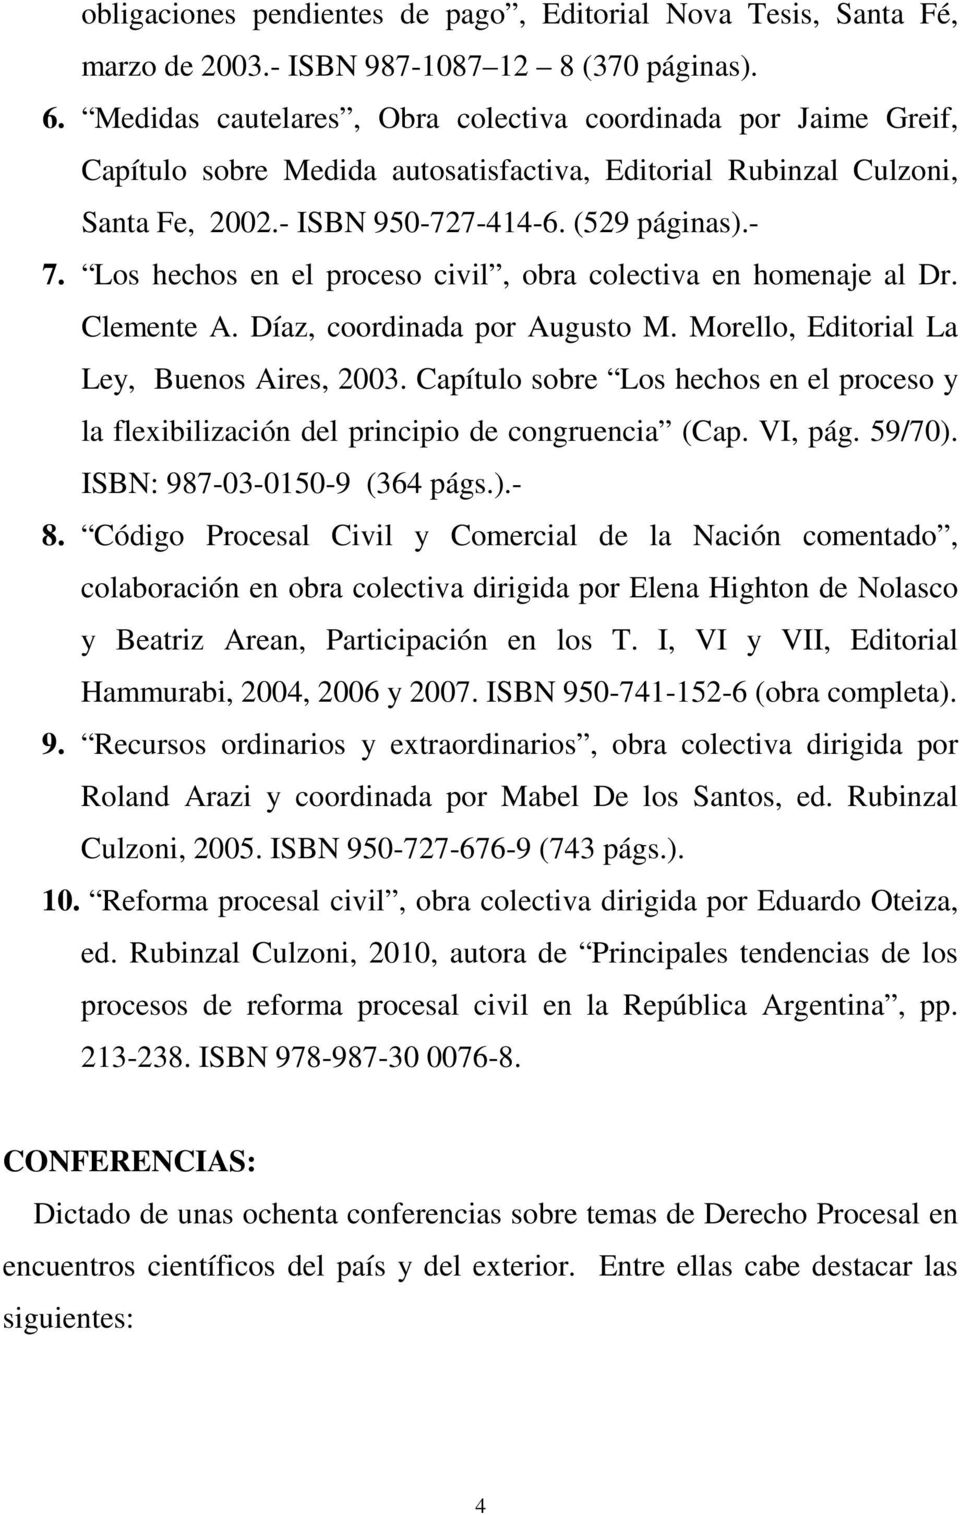 Los hechos en el proceso civil, obra colectiva en homenaje al Dr. Clemente A. Díaz, coordinada por Augusto M. Morello, Editorial La Ley, Buenos Aires, 2003.